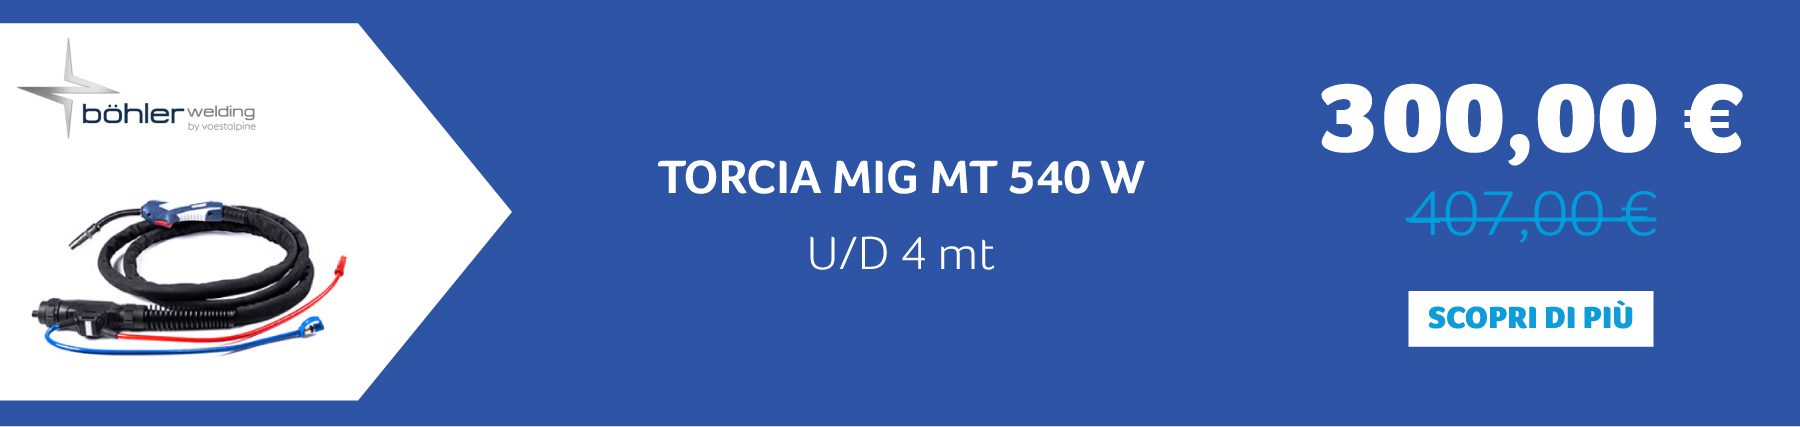 Voestalpine Böhler Welding - TORCIA MIG MT 540 W U/D 4 mt. 300,00 € anziché 407,00 €